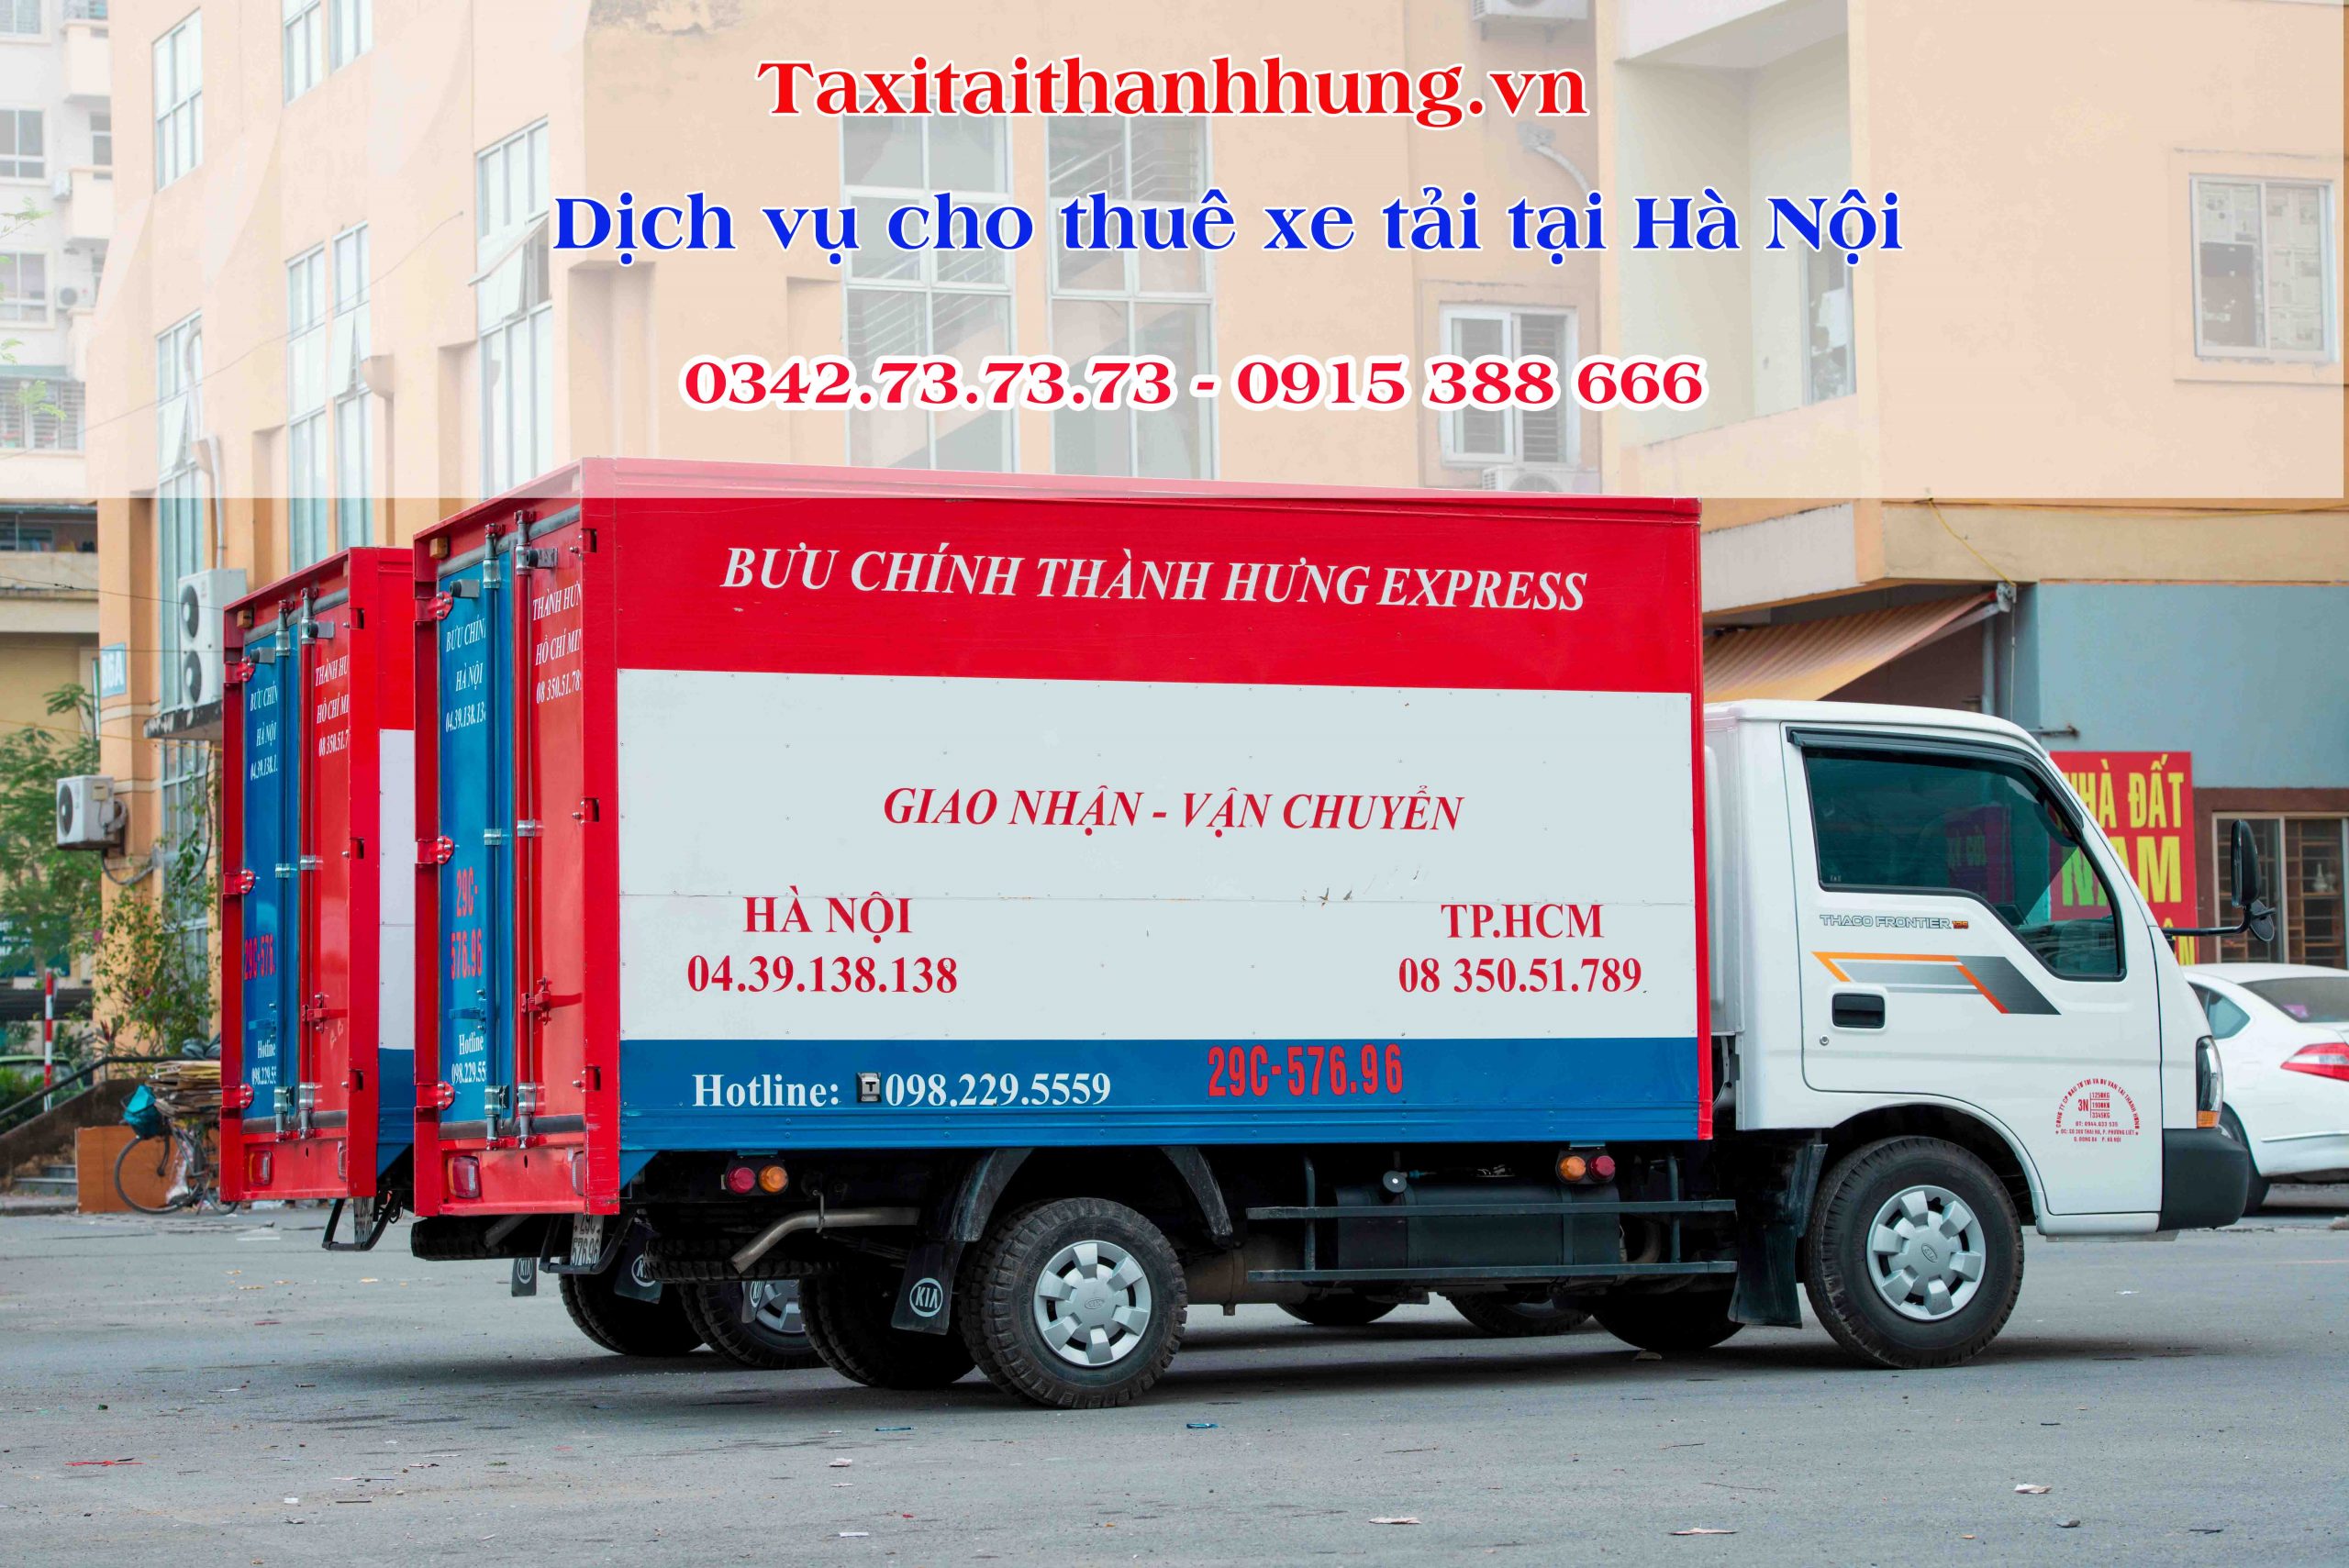 Giờ cấm xe tải vào thành phố Hà Nội  Xin giấy phép vào phố cấm